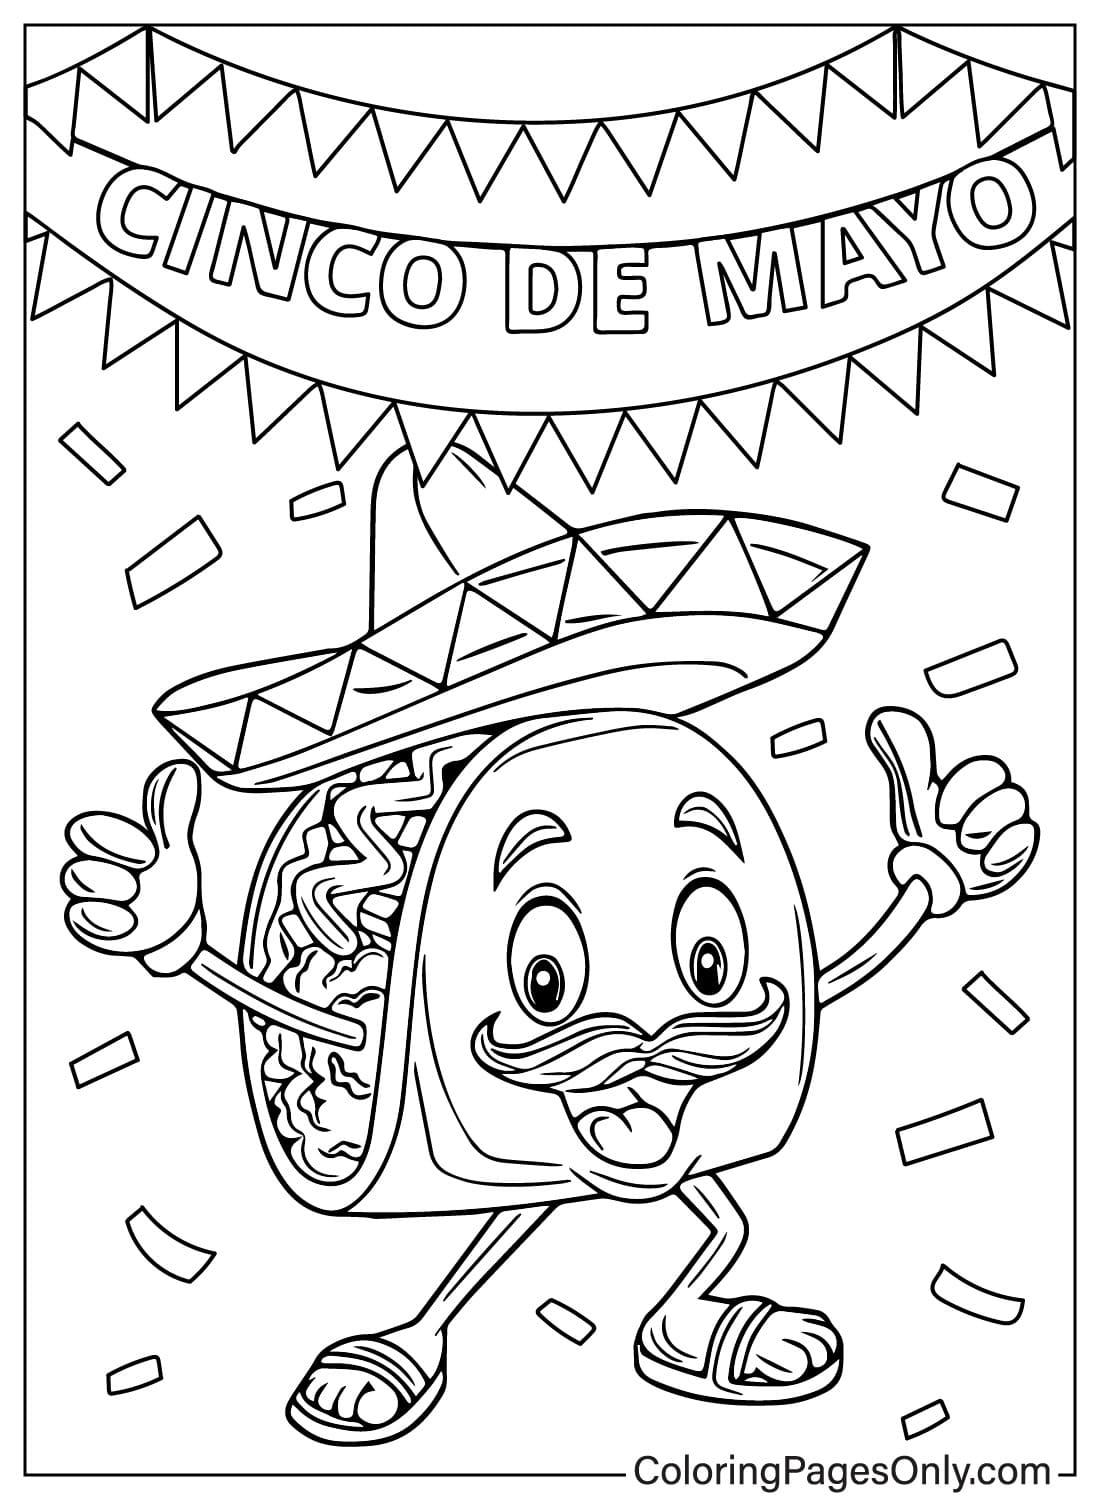 Taco comida mexicana del Cinco de Mayo